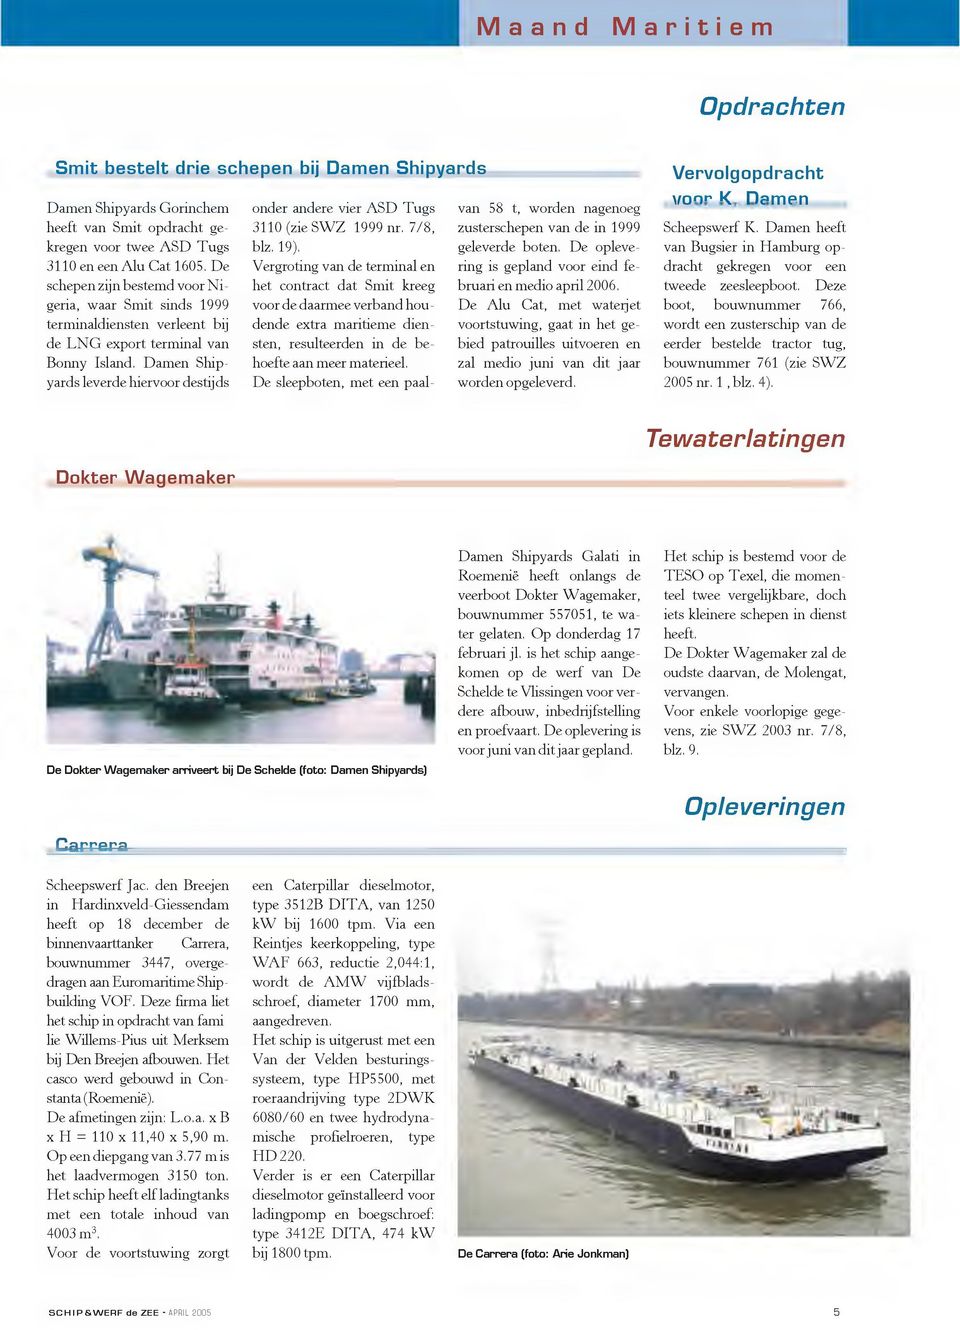 Damen Shipyards leverde hiervoor destijds onder andere vier ASD Tugs 3110 (zie SW Z 1999 nr. 7/8, blz. 19).